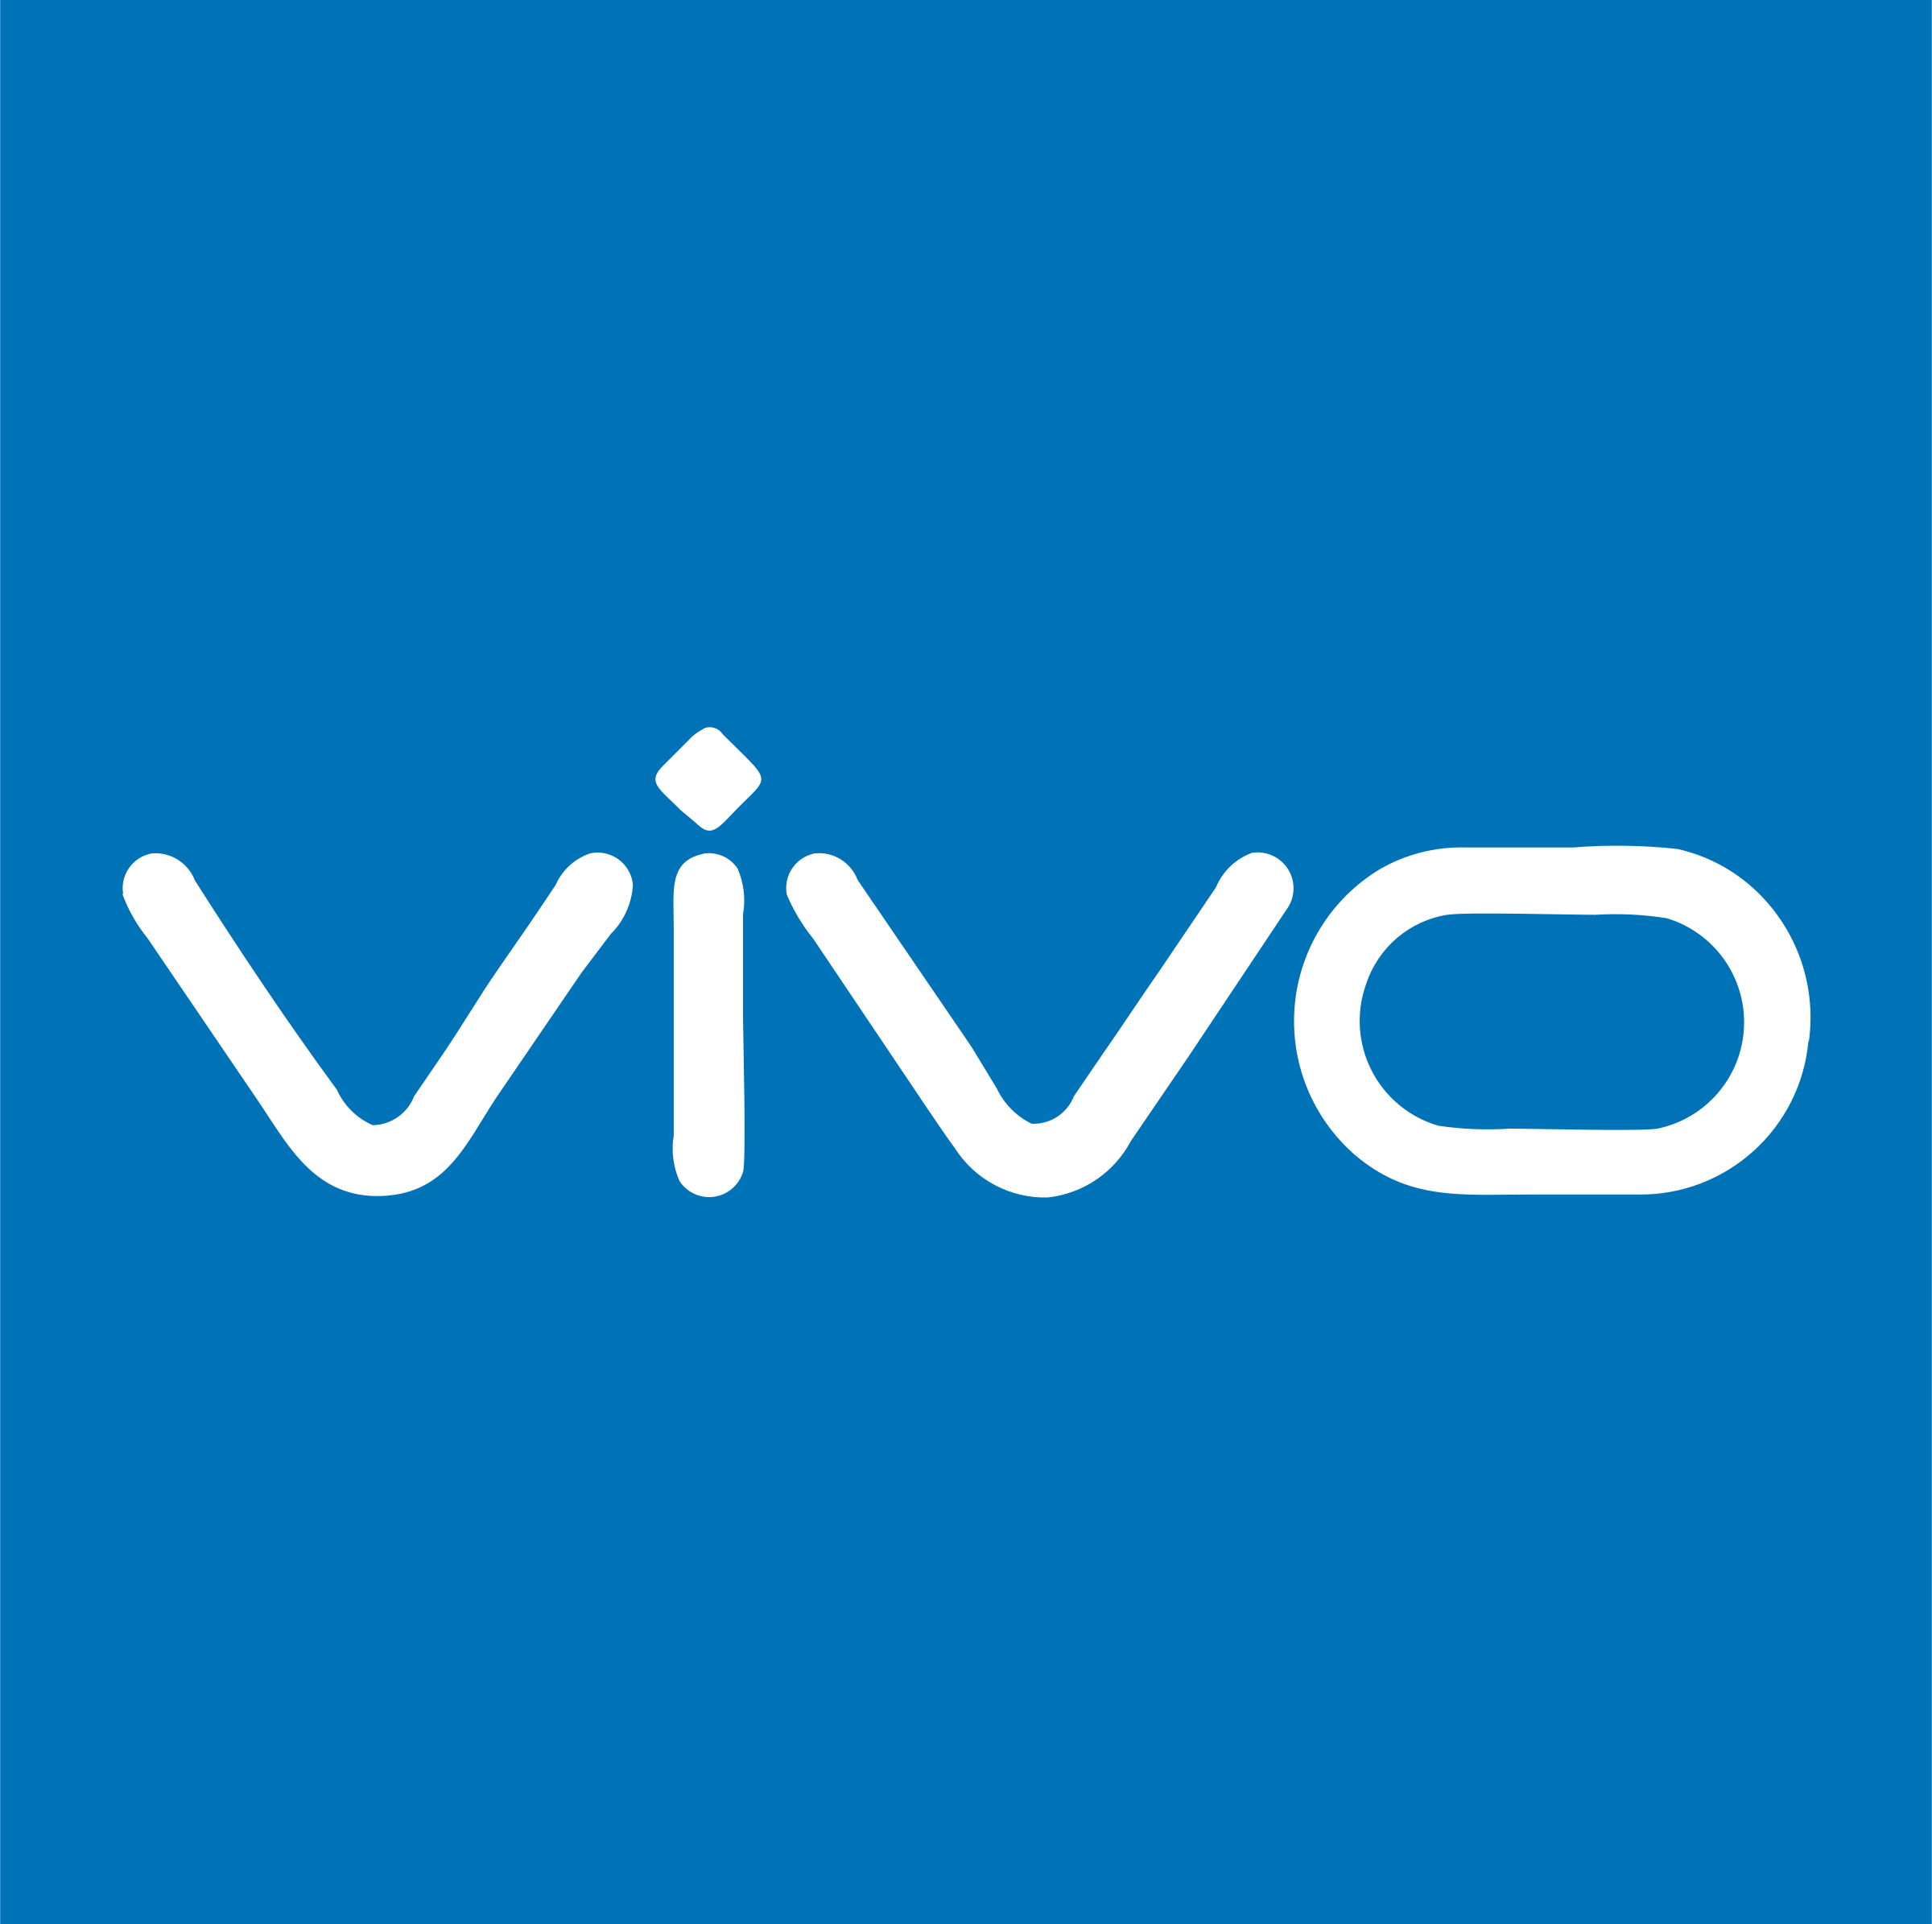 2vivo-1-logo-png-transparent